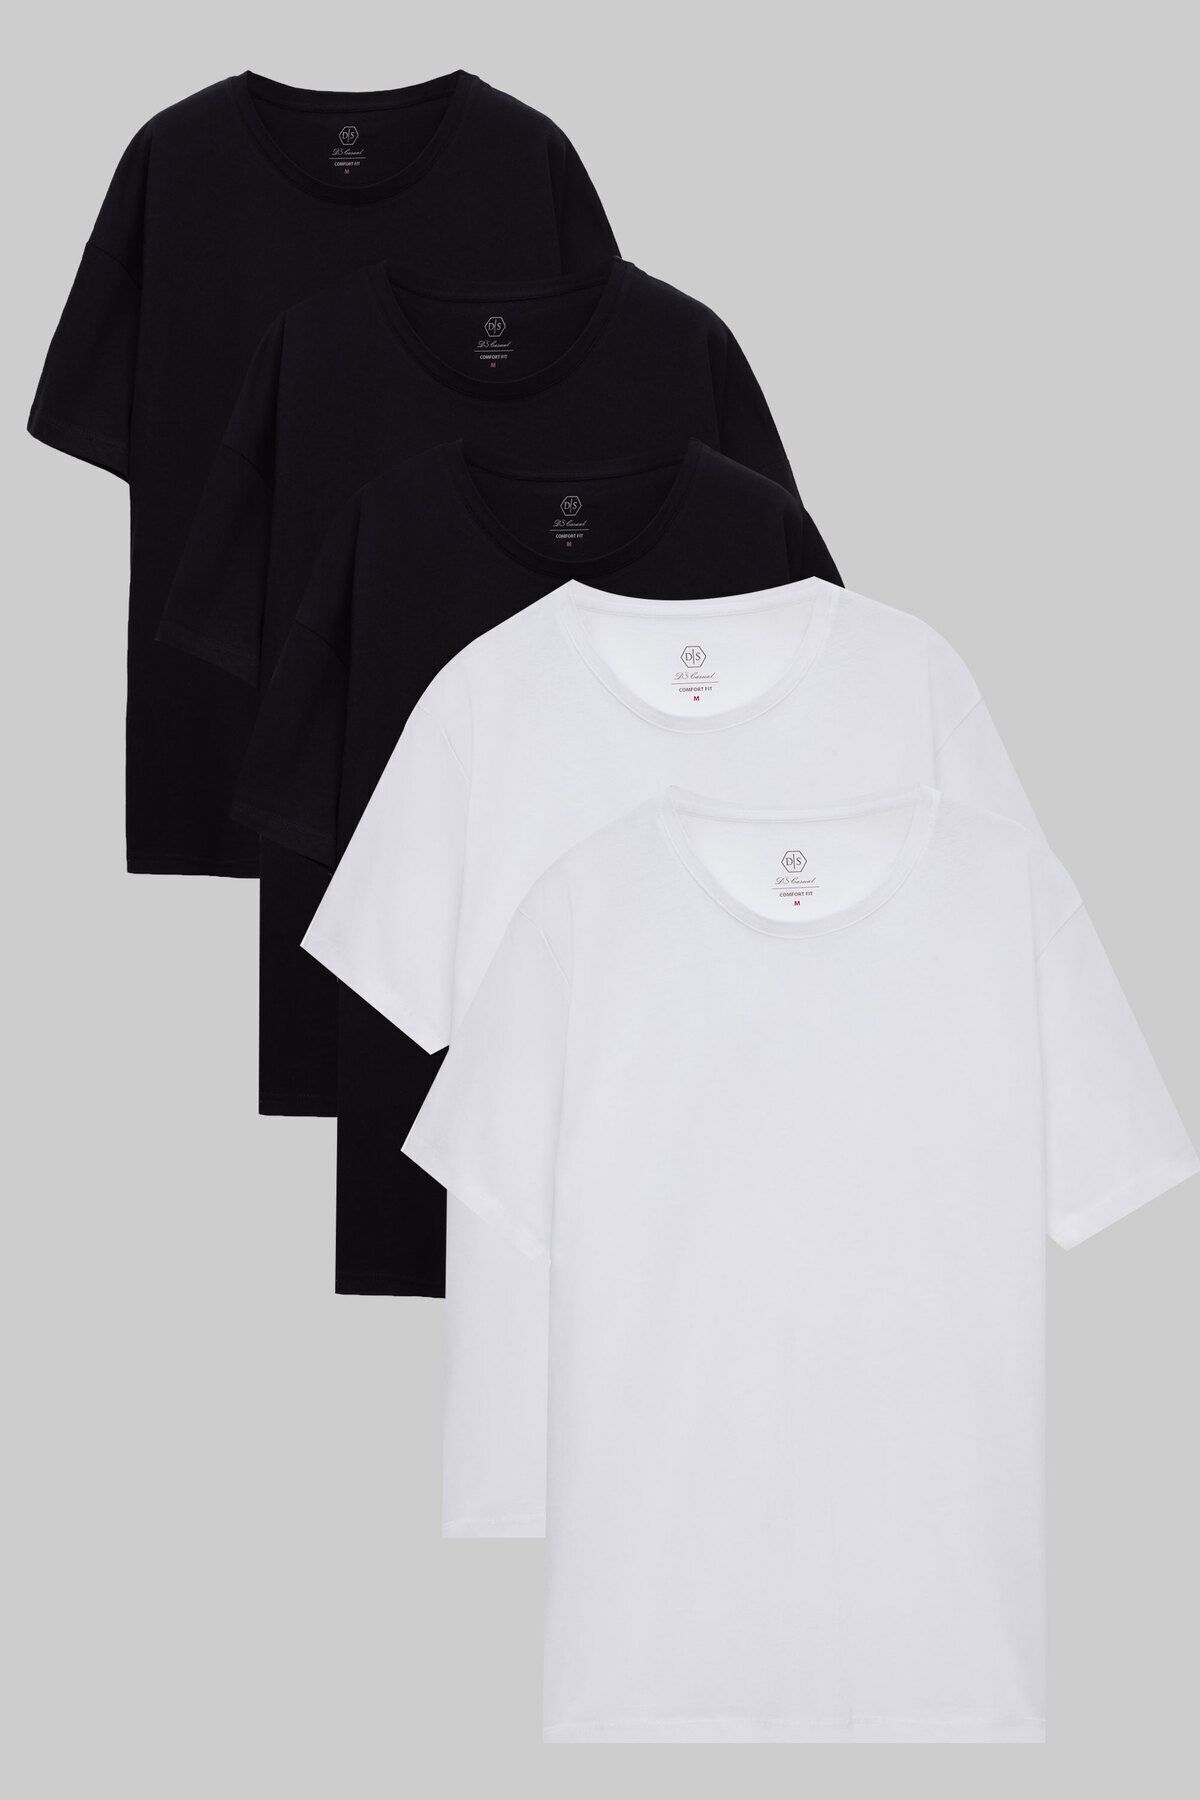 D'S Damat Ds Damat Siyah/beyaz 5'li Oversize %100 Pamuk T-shirt